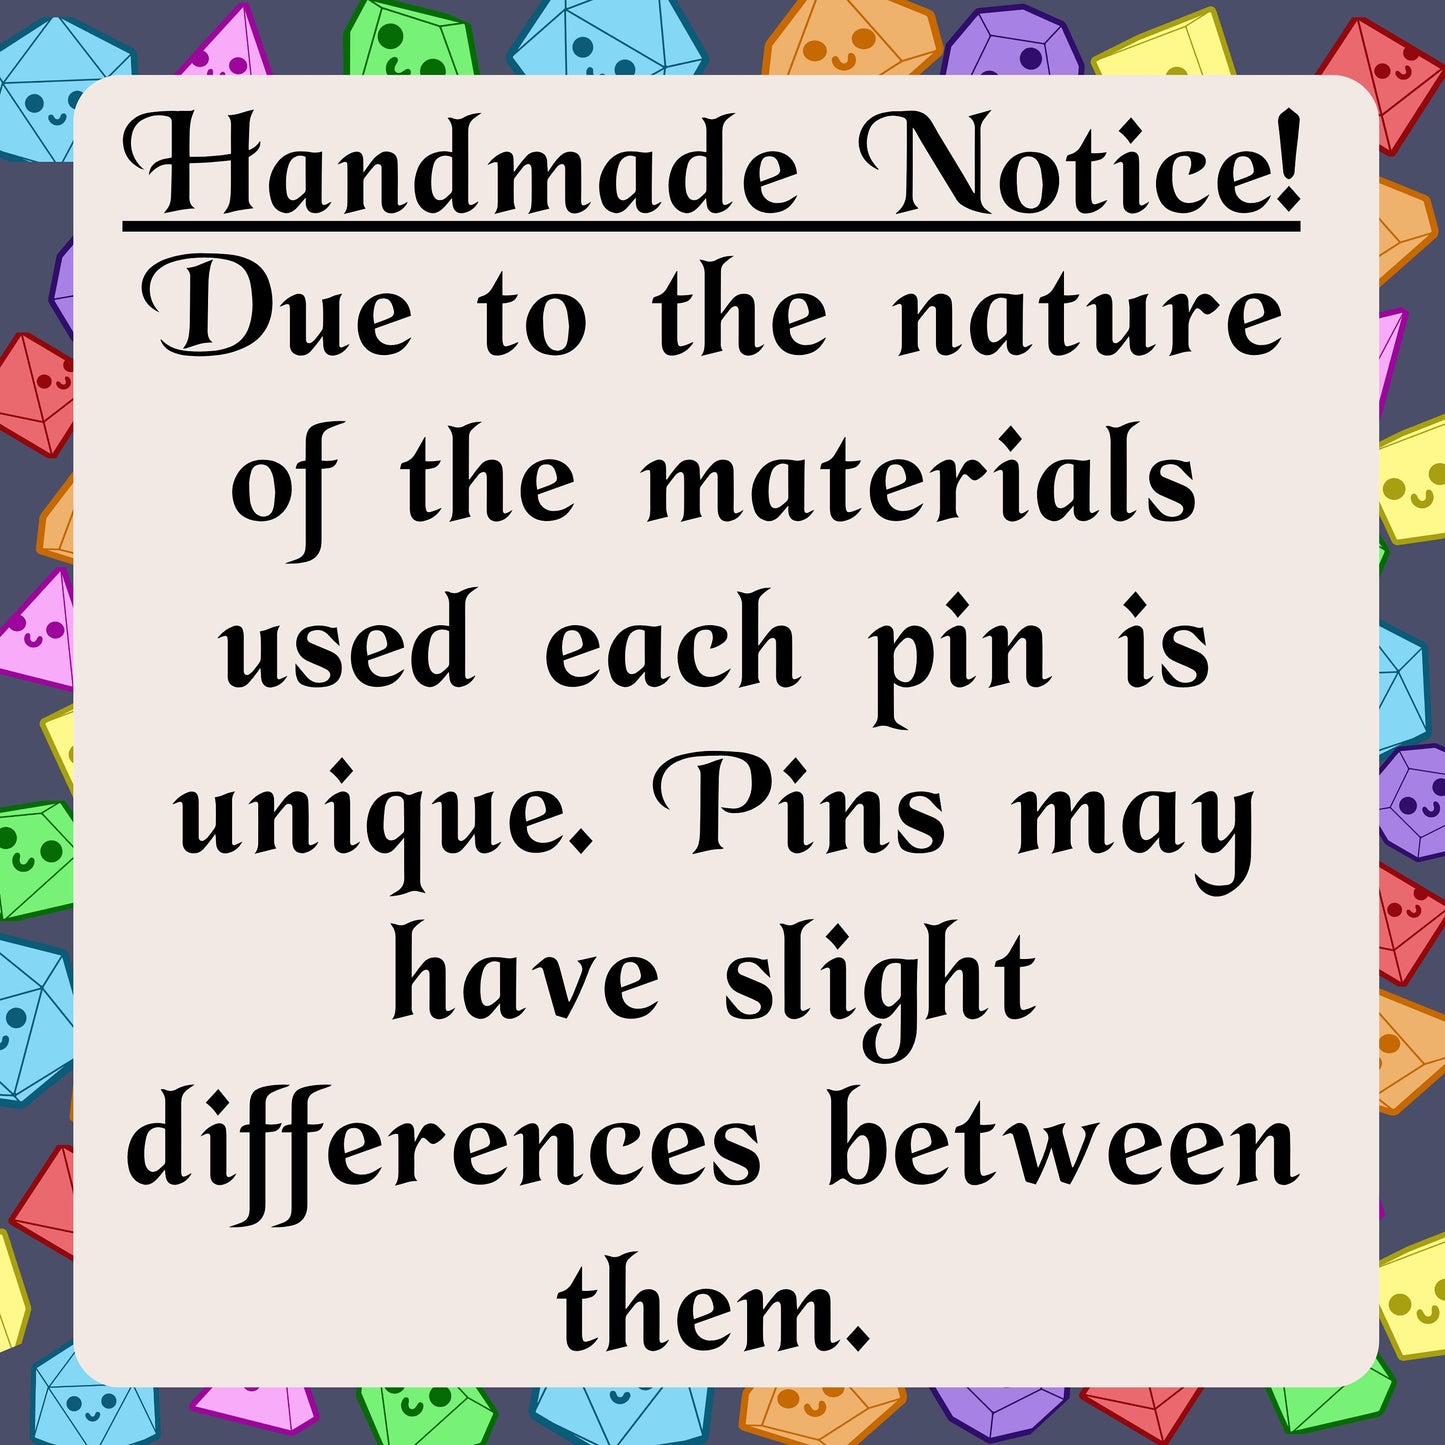 Handmade Notice